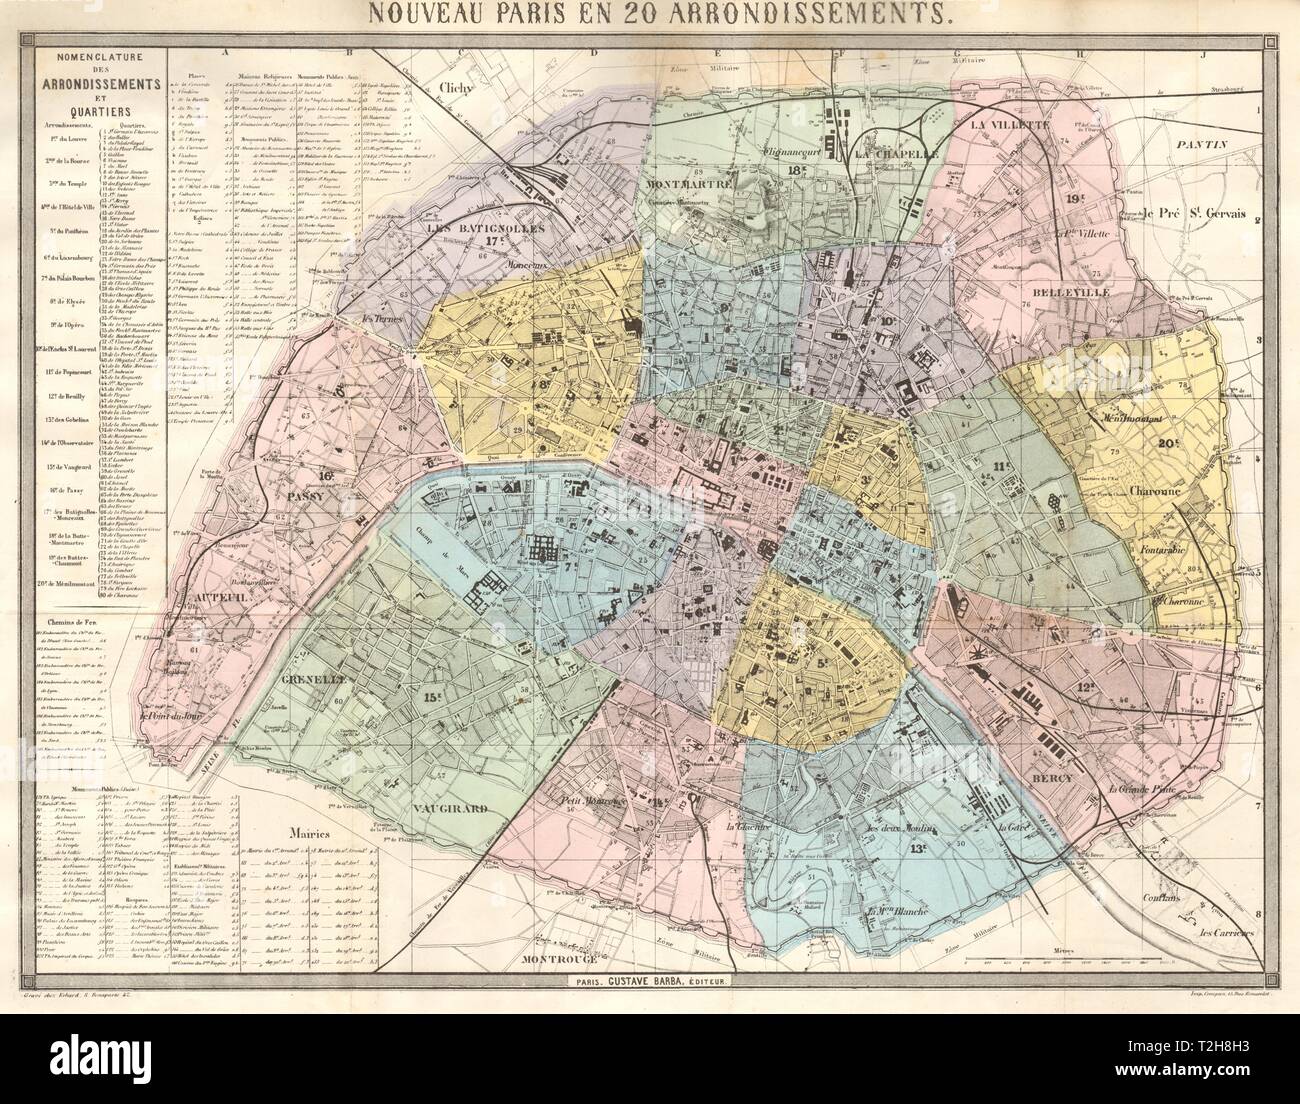 Nouveau Paris en 20 Arrondissements. BARBA 1860 old antique map plan chart Stock Photo